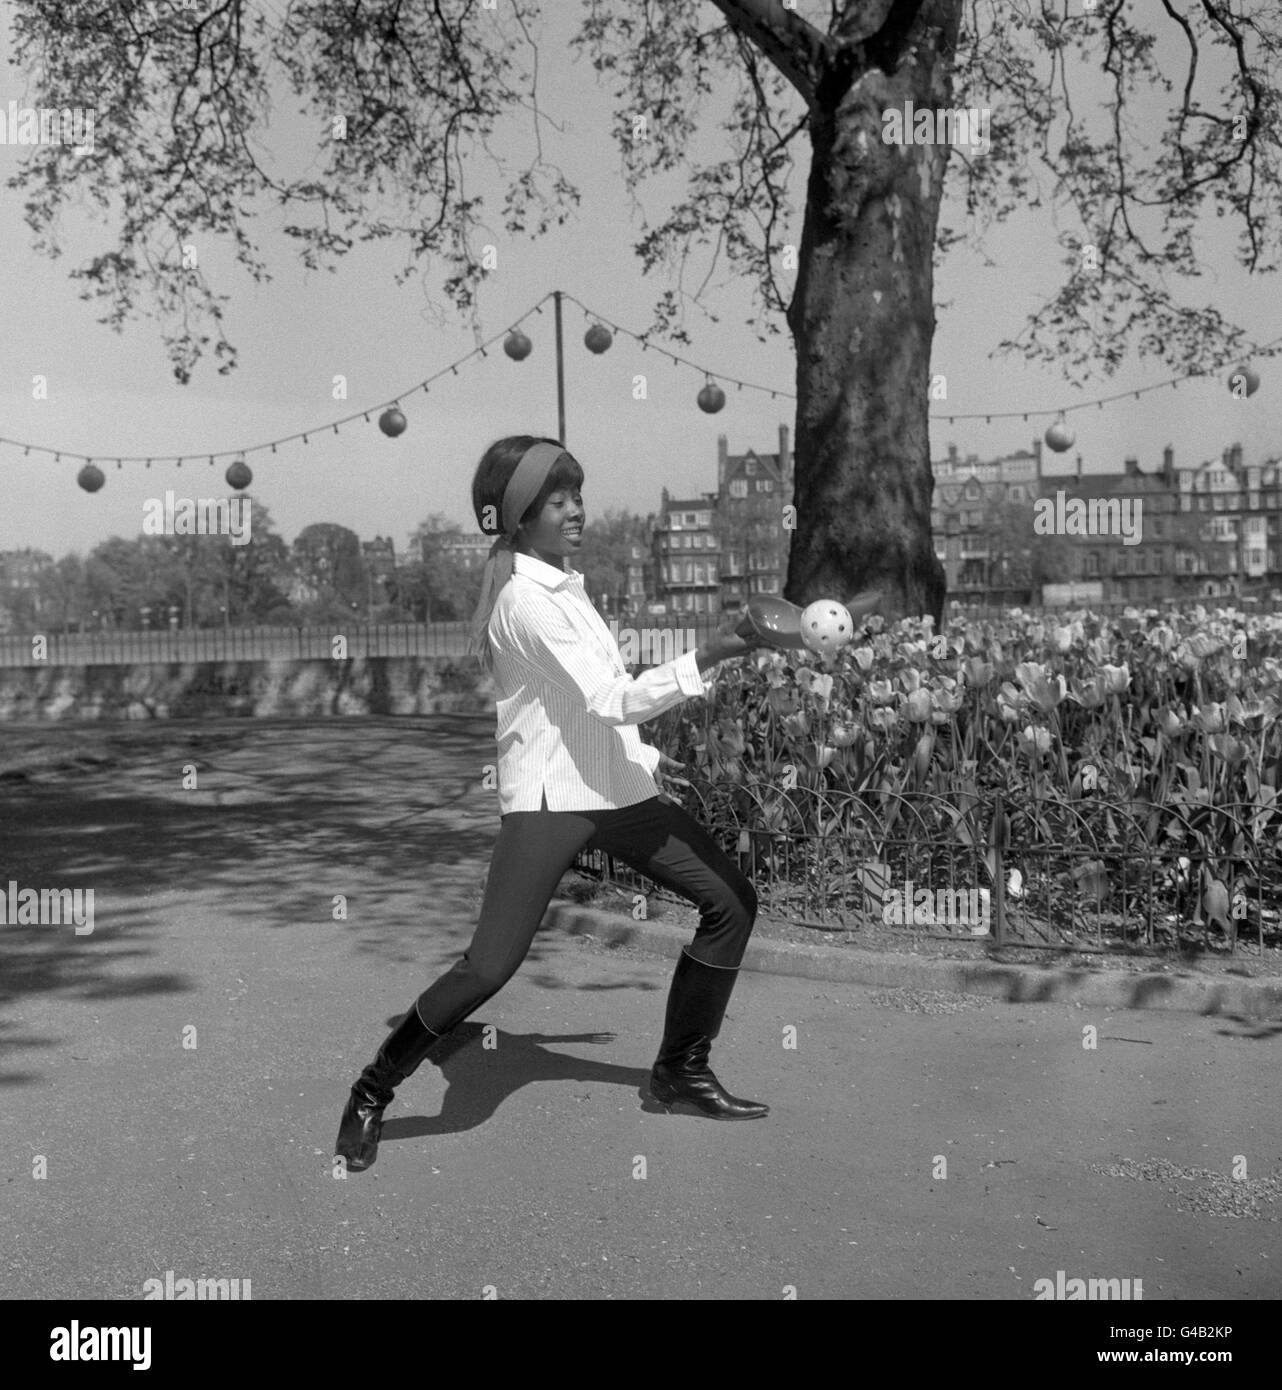 Die 16-jährige Popsängerin Millie probiert Slingball aus, ein neues Ballspiel, das seine erste öffentliche Demonstration in Großbritannien in Battersea Pleasure Gardens findet Stockfoto